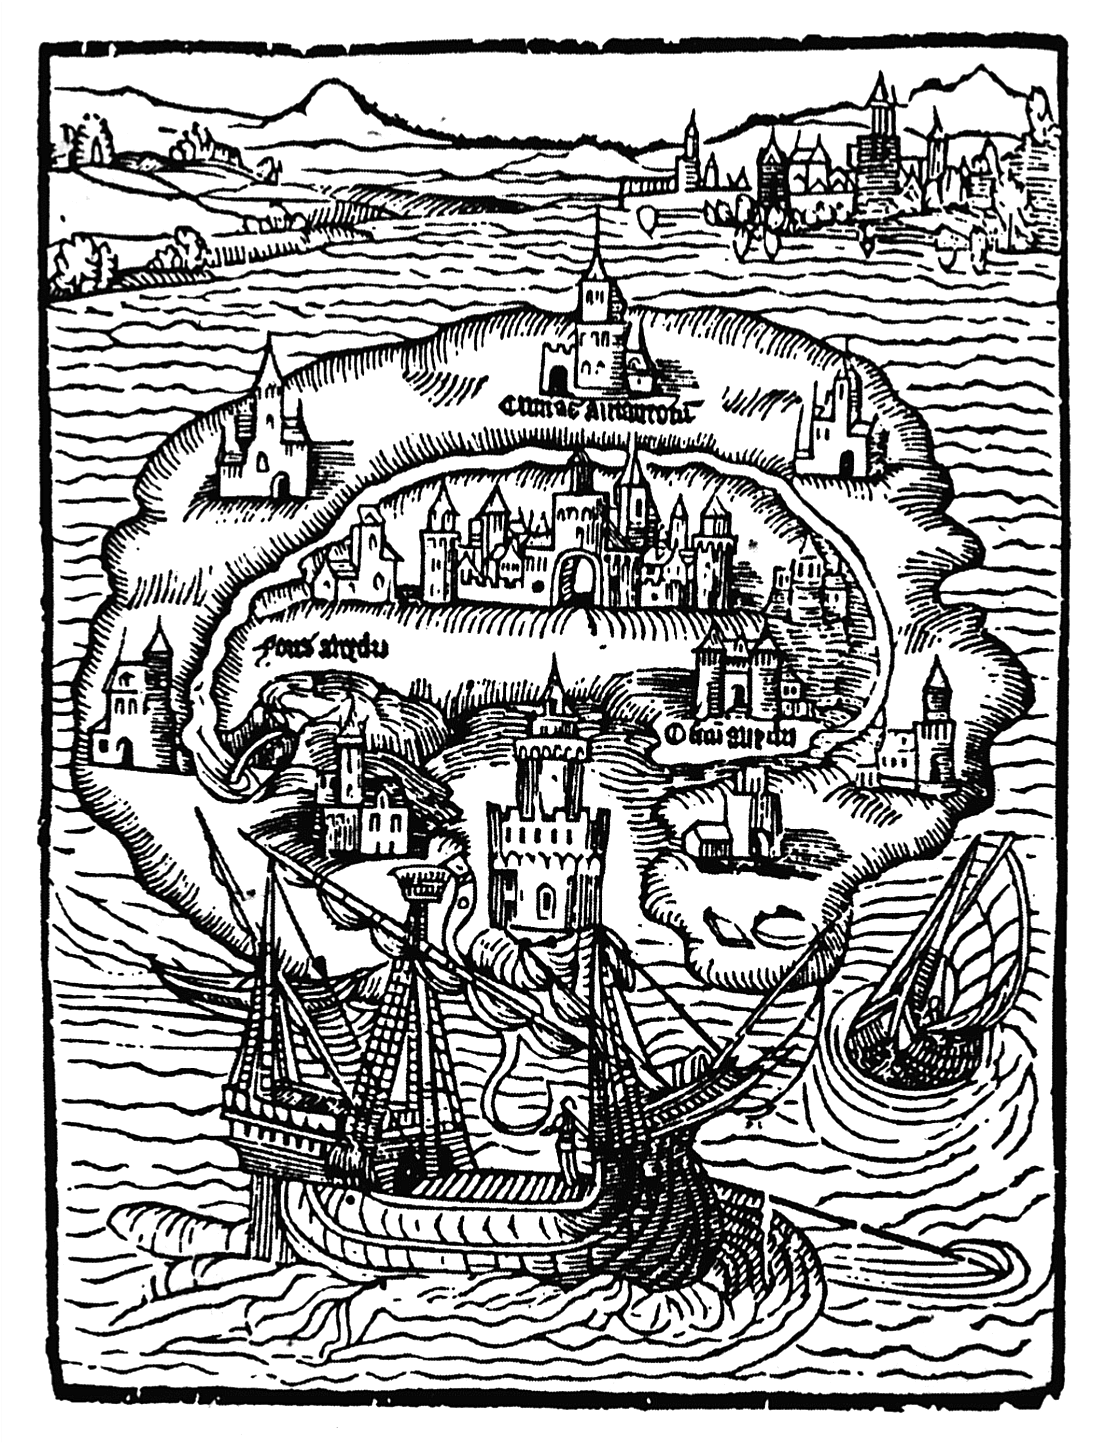 Ilustración de la isla Utopía, de Tomás Moro.